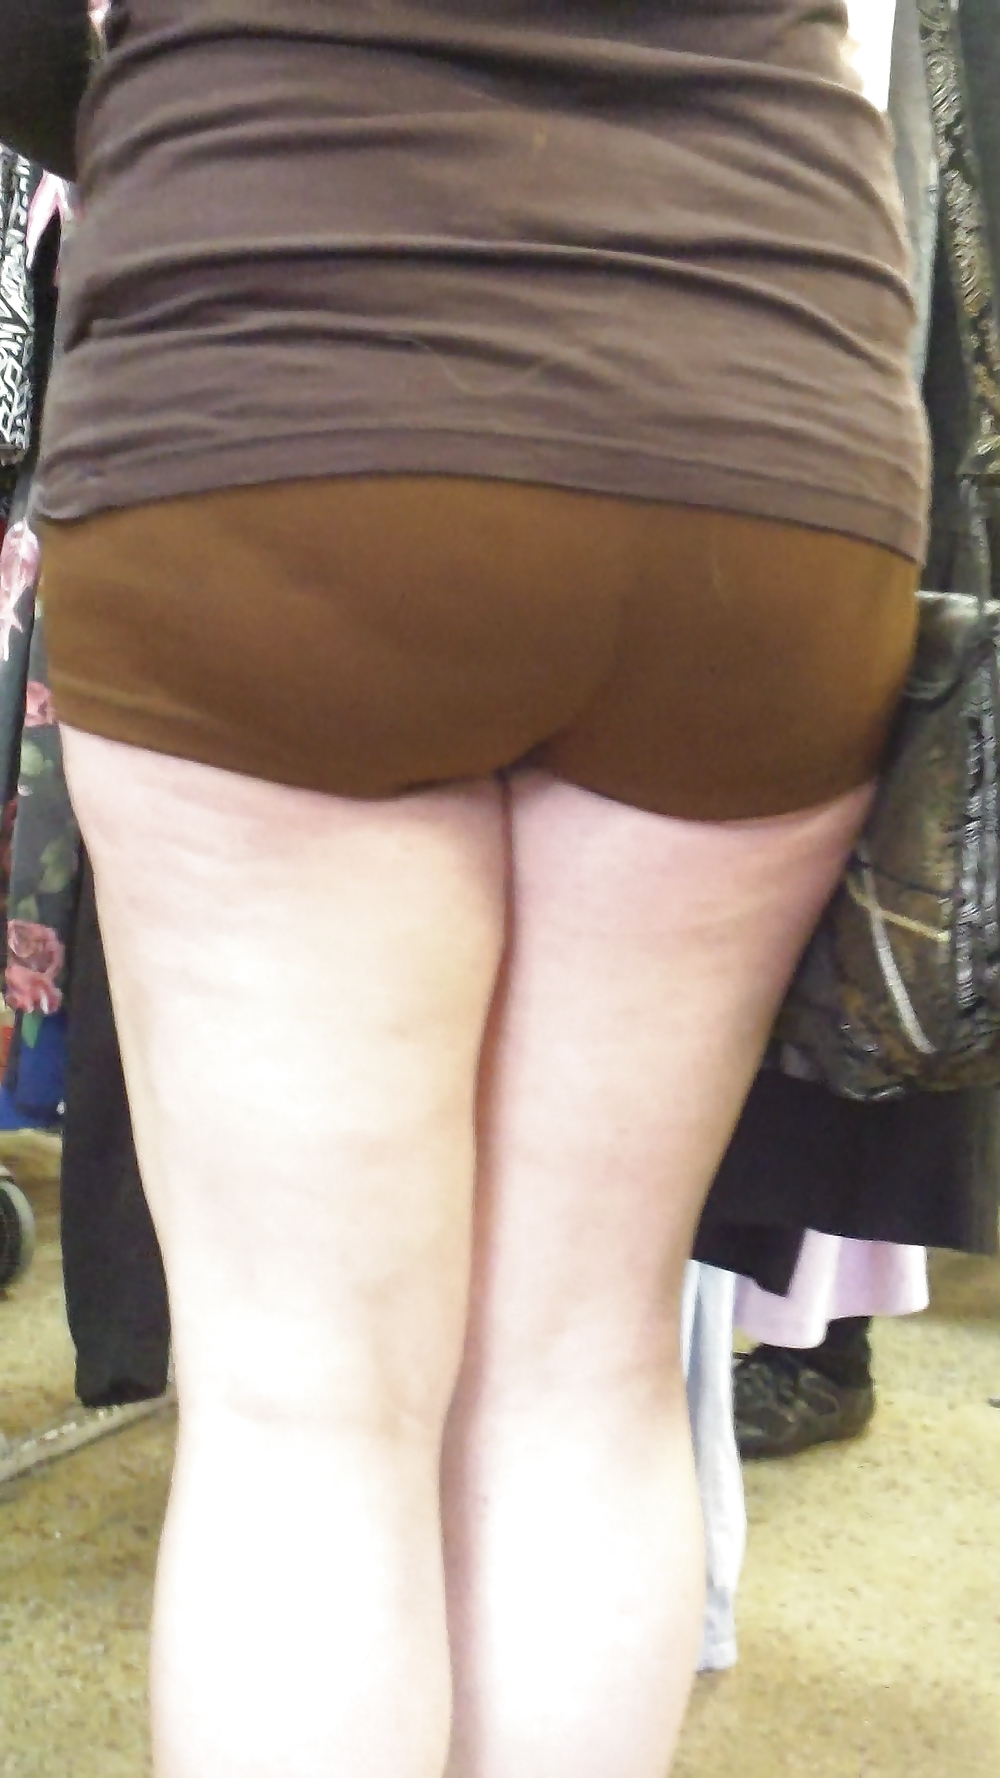 Popular teen girls butts & ass in jeans #21501269